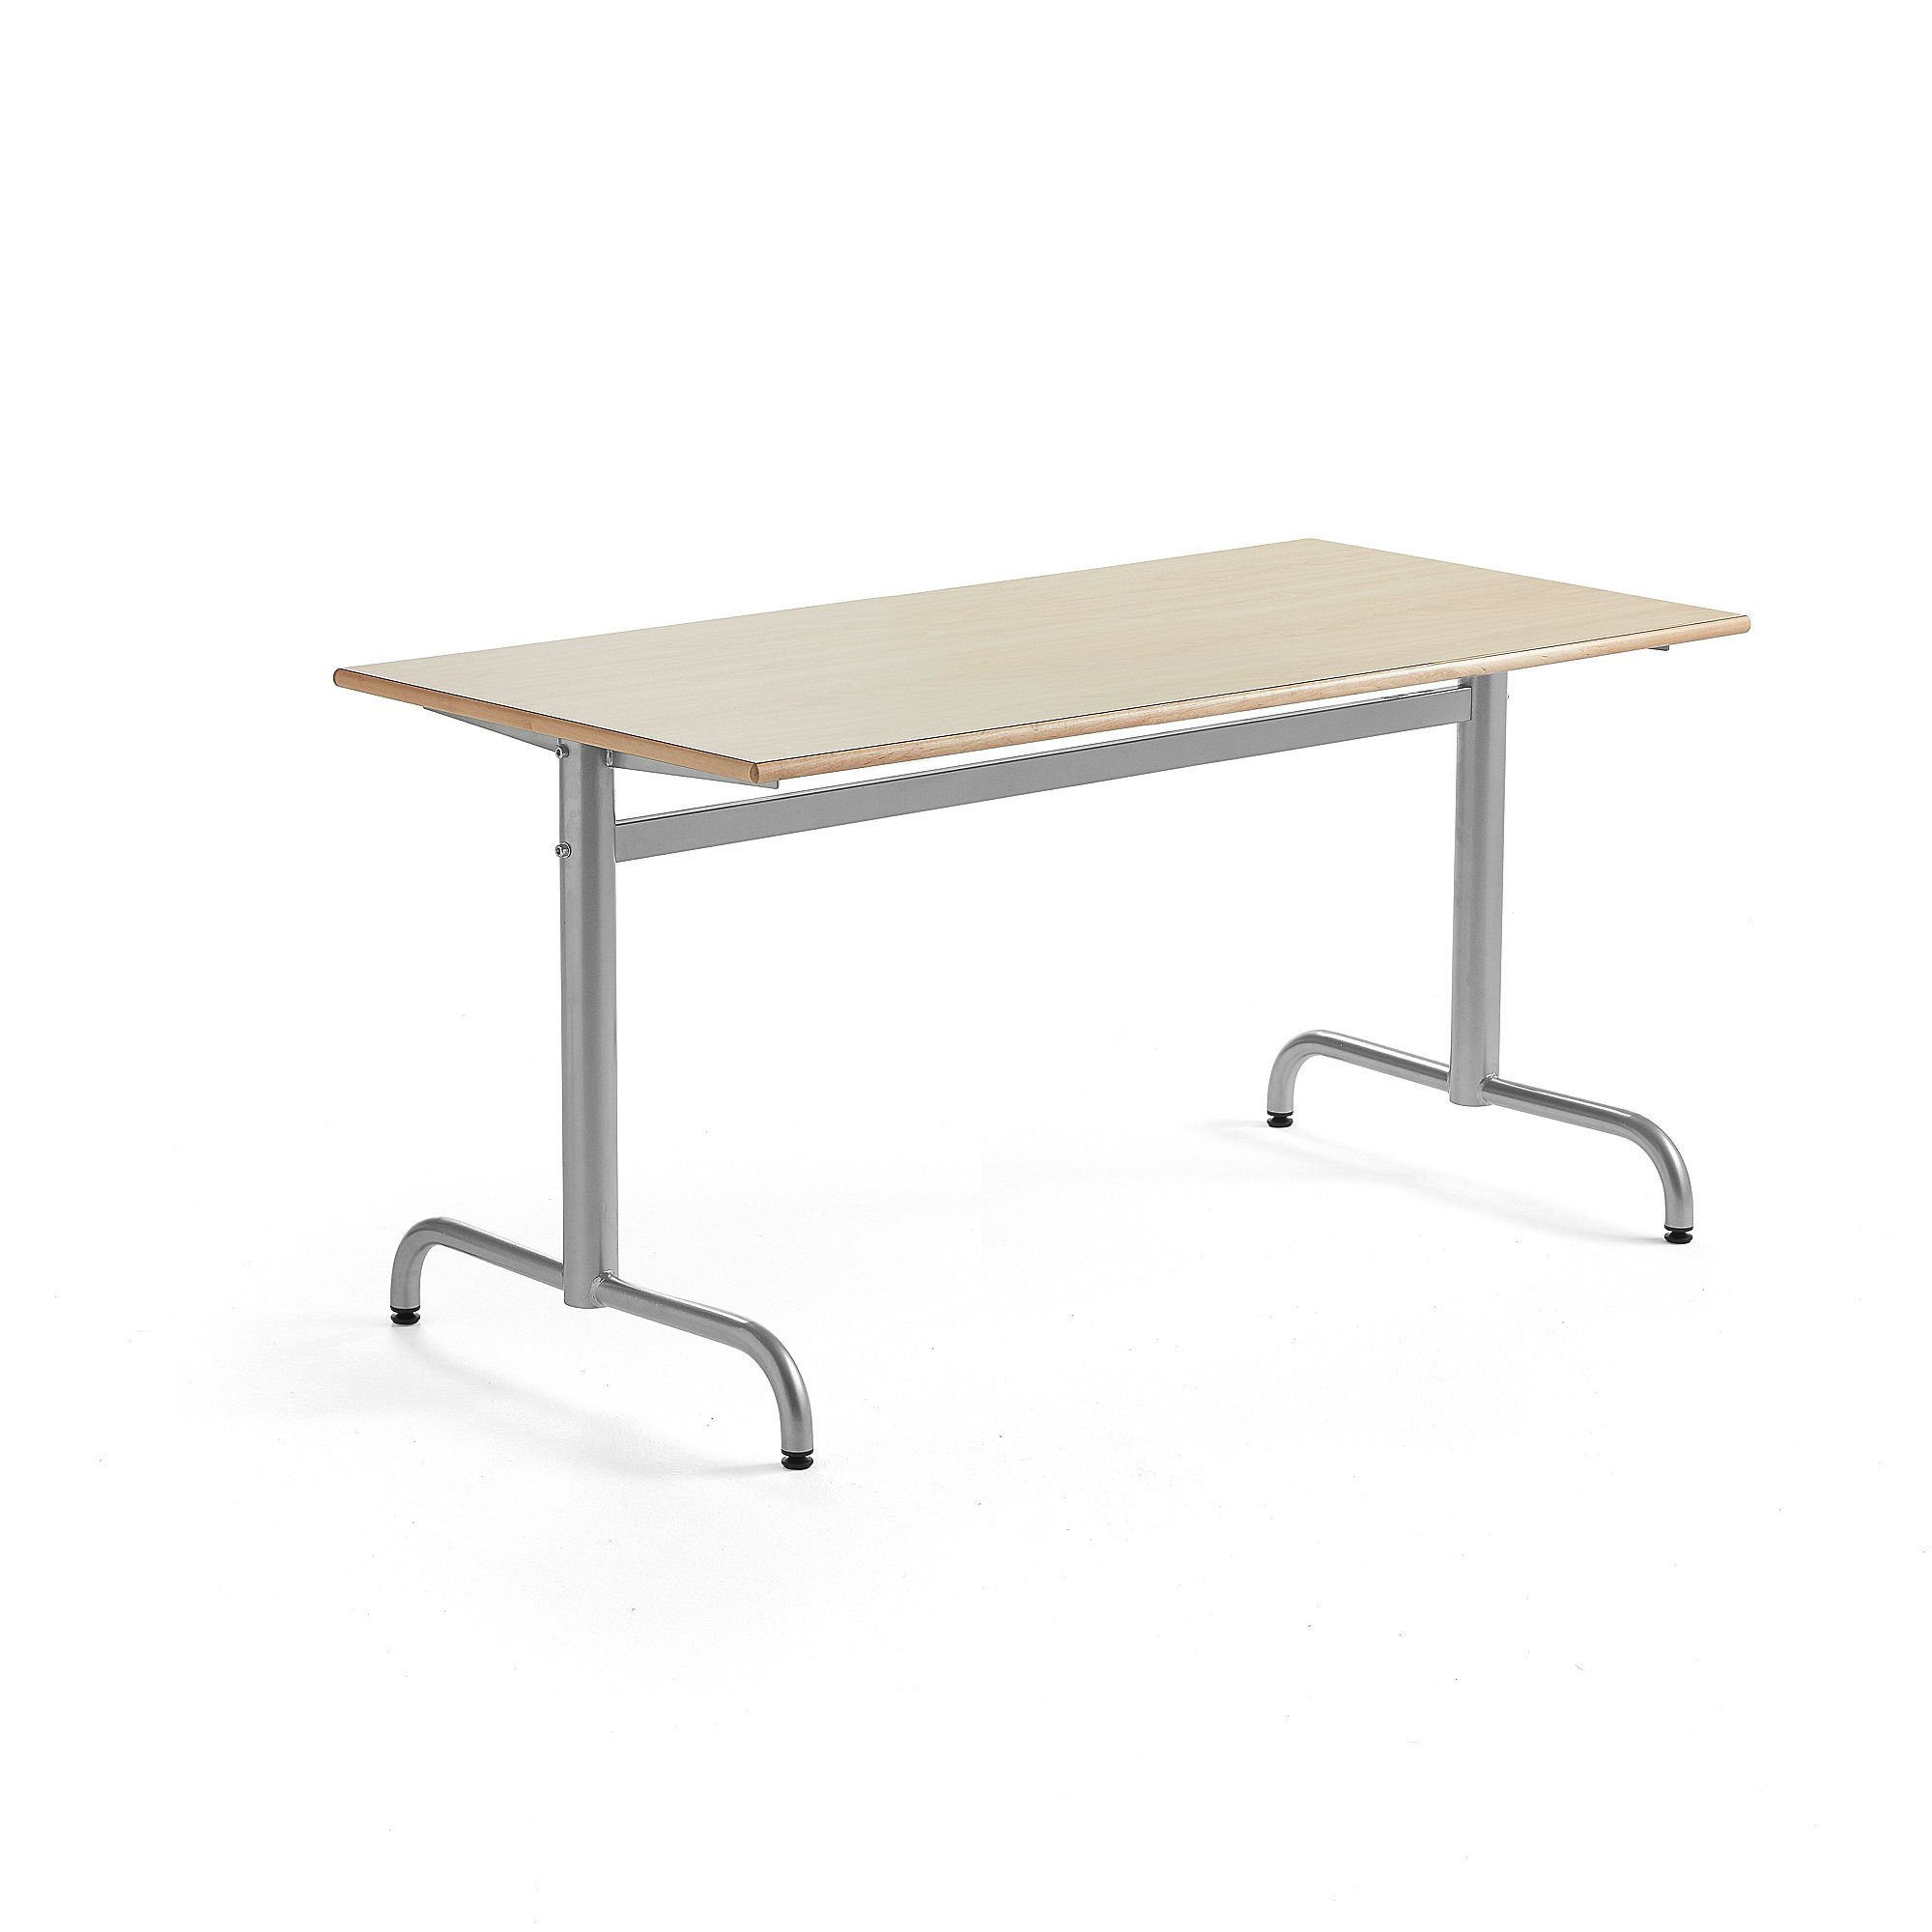 Stůl PLURAL, 1400x700x600 mm, HPL deska, bříza, stříbrná